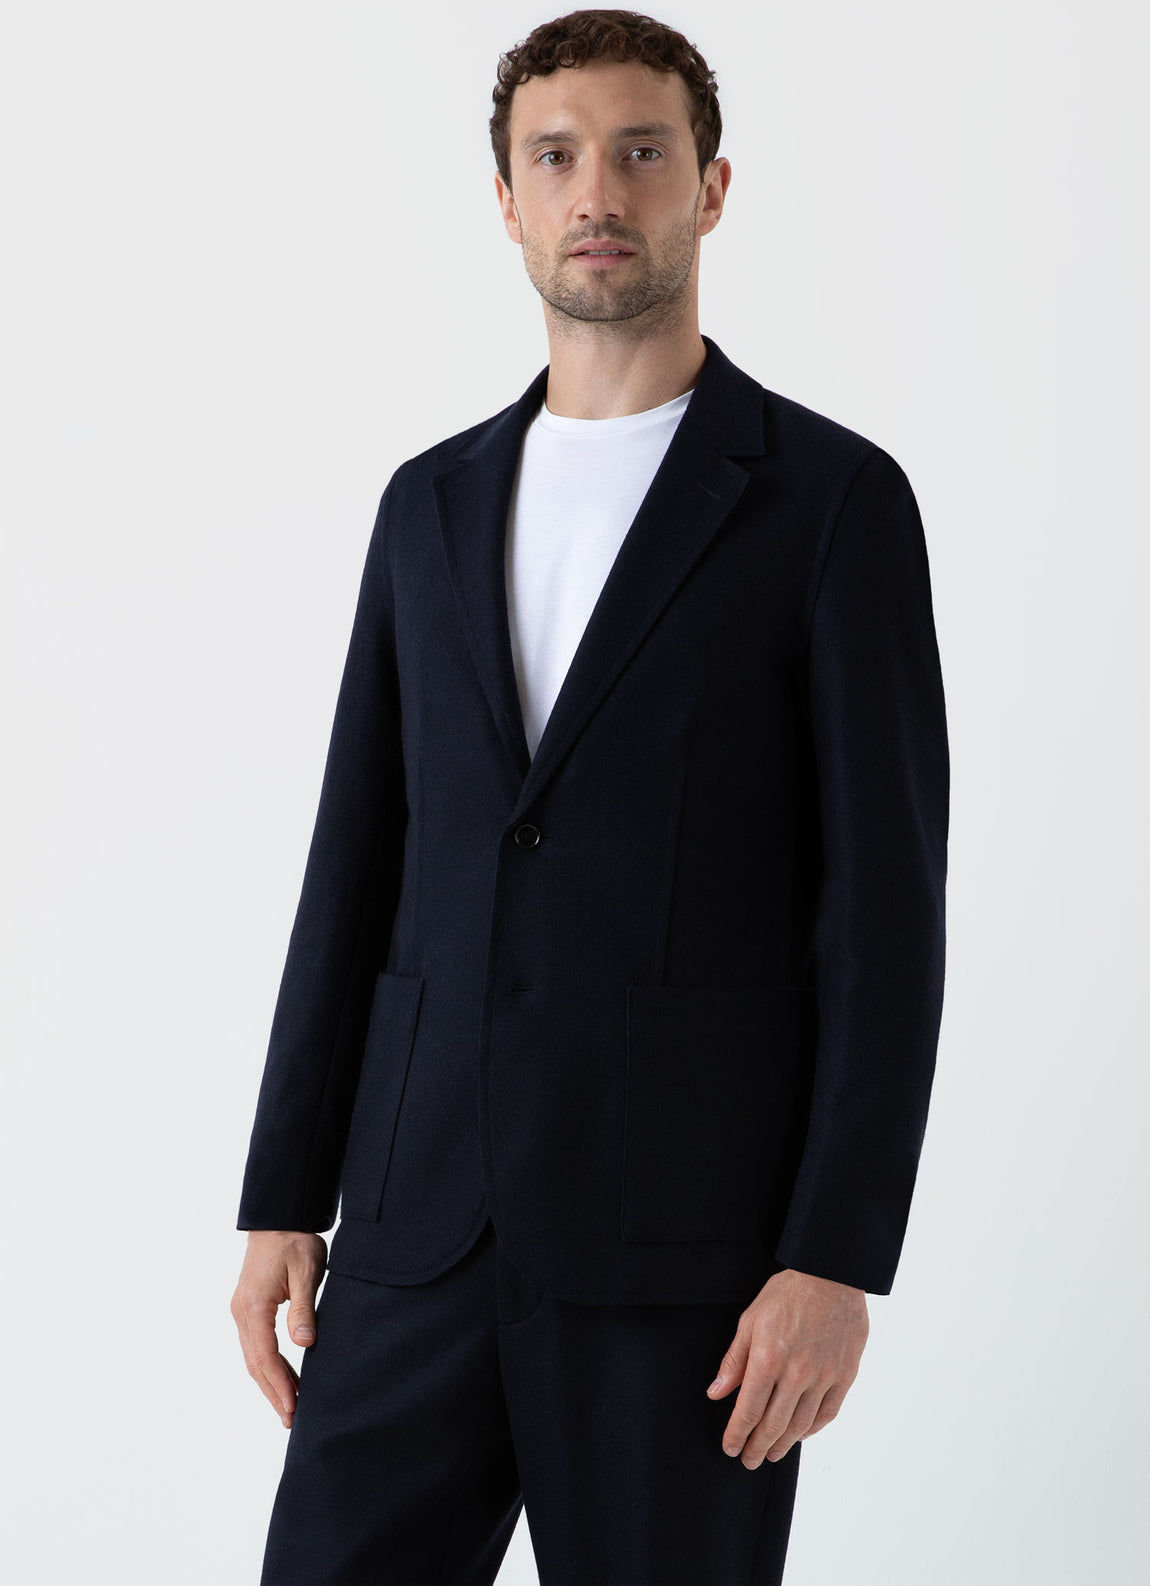 Men's Sunspel x Casely-Hayford Suit Jacket in Navy | Sunspel